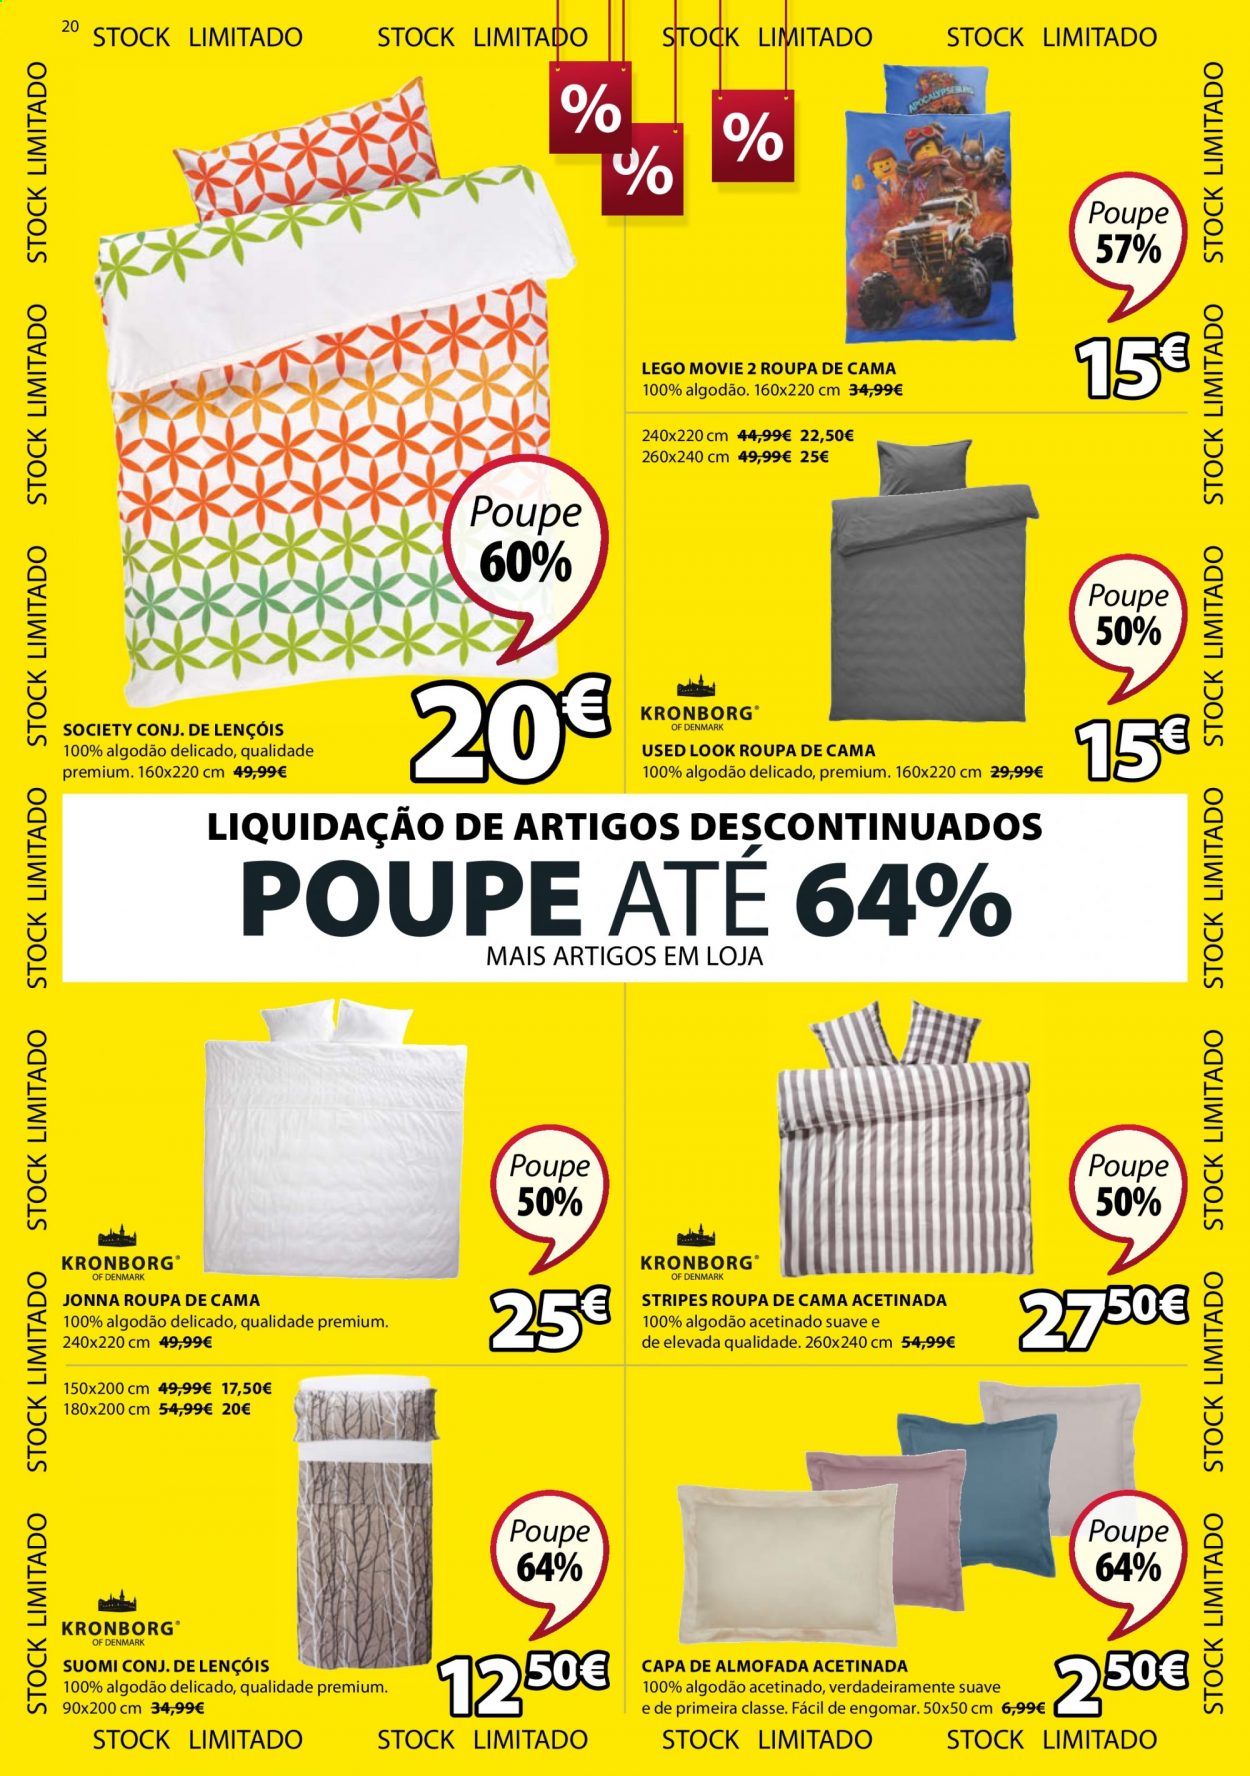 thumbnail - Folheto Jysk - 25.12.2020 - 13.1.2021 - Produtos em promoção - almofada, roupa de cama, LEGO. Página 20.